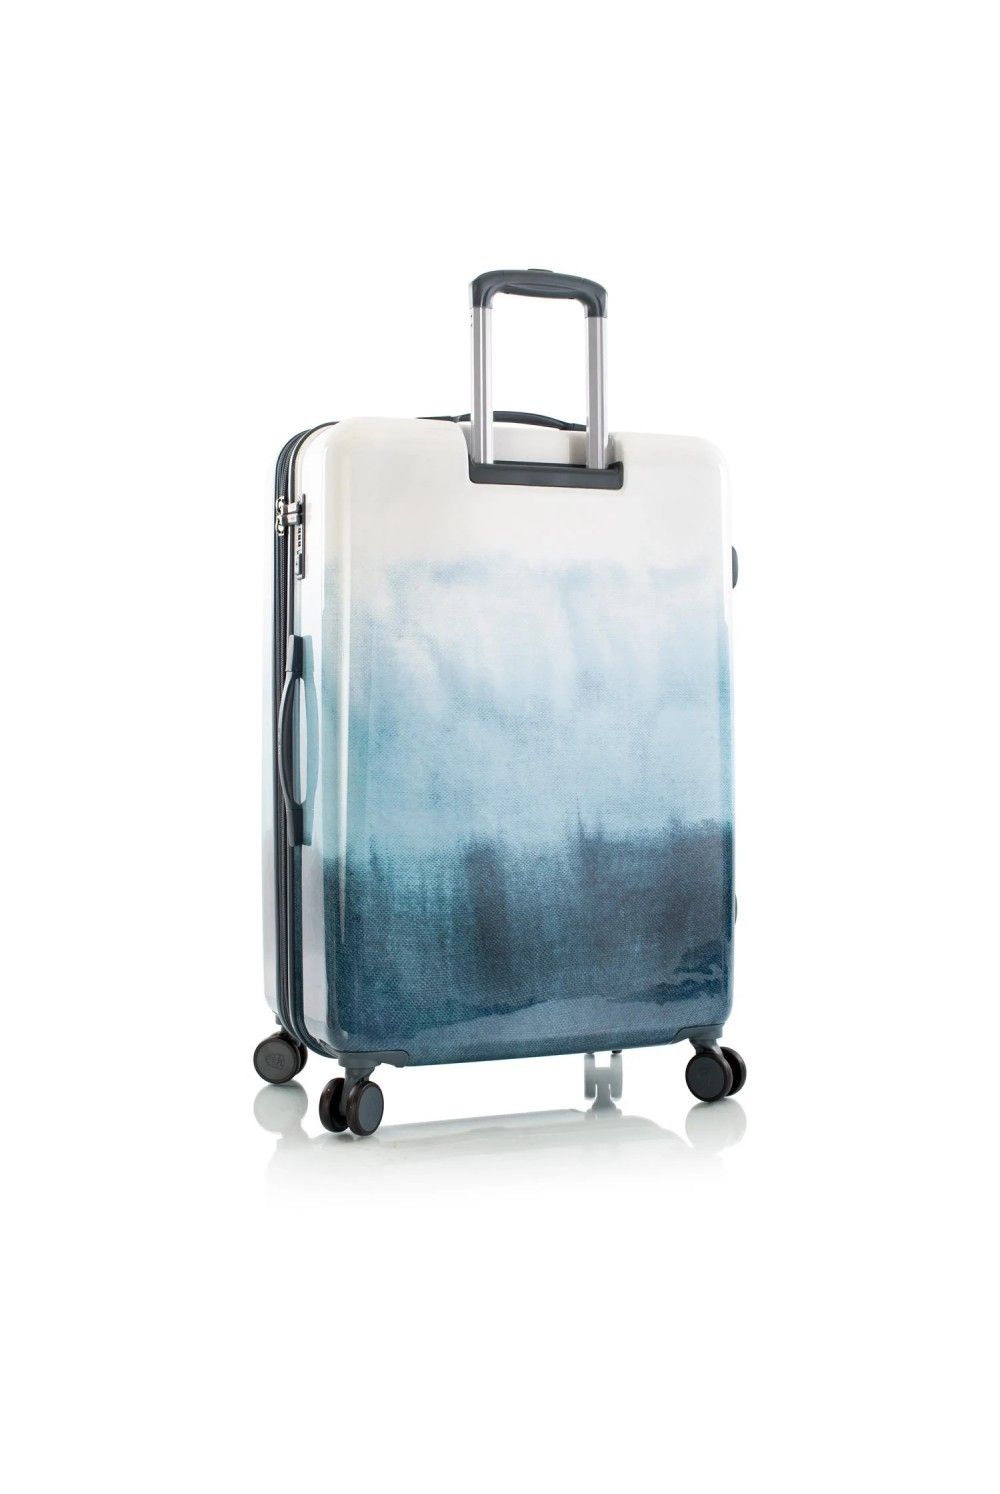 Suitcase Heys BLUE Fashion 4 Rad Large 76cm expandable